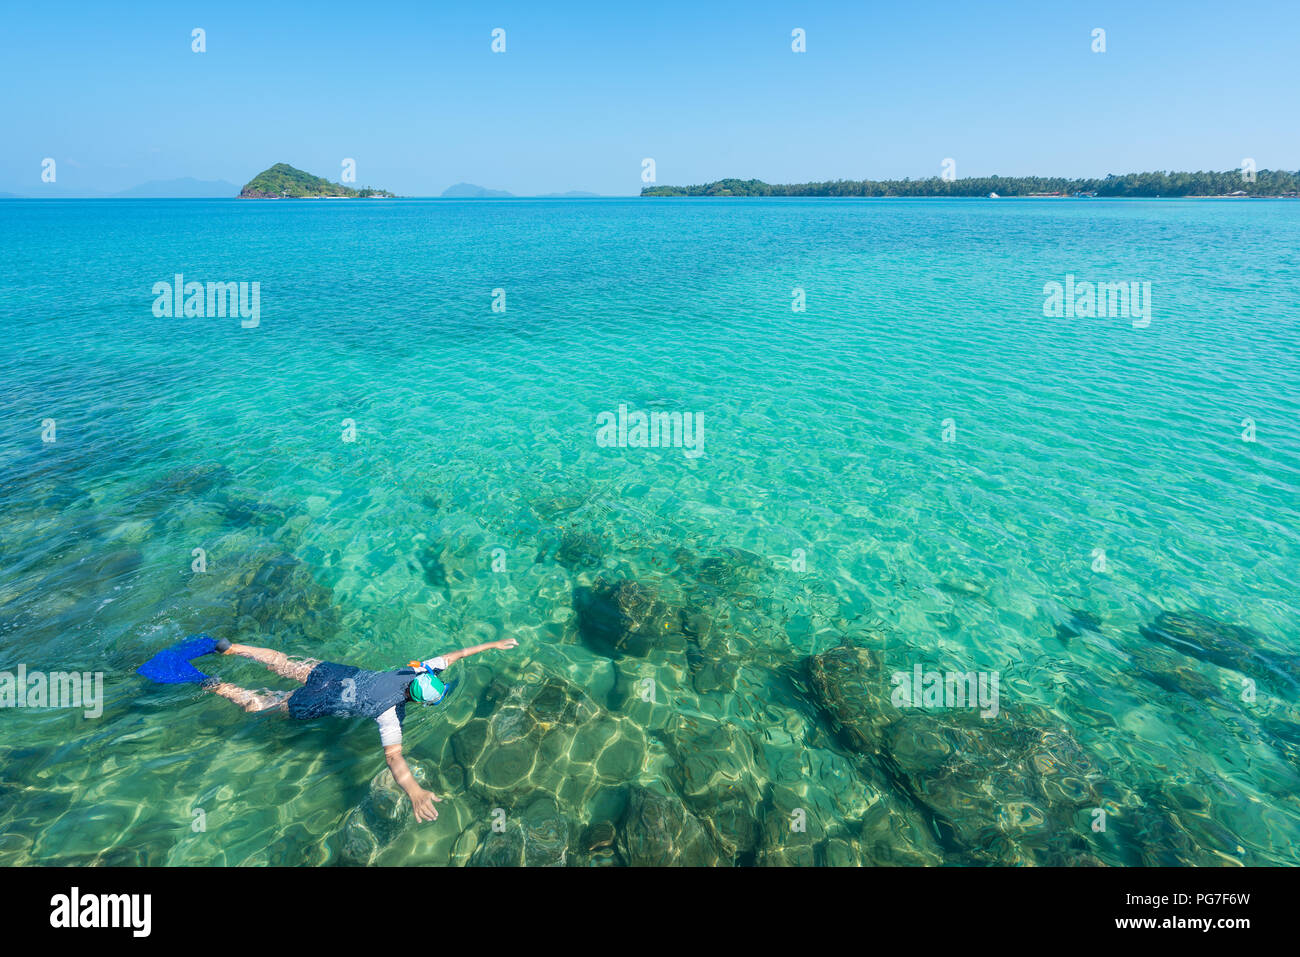 Touristen schnorcheln im kristallklaren türkisblauen Wasser in der Nähe von Tropical Resort in Phuket, Thailand. Sommer, Ferien, Reisen und Urlaub. Stockfoto